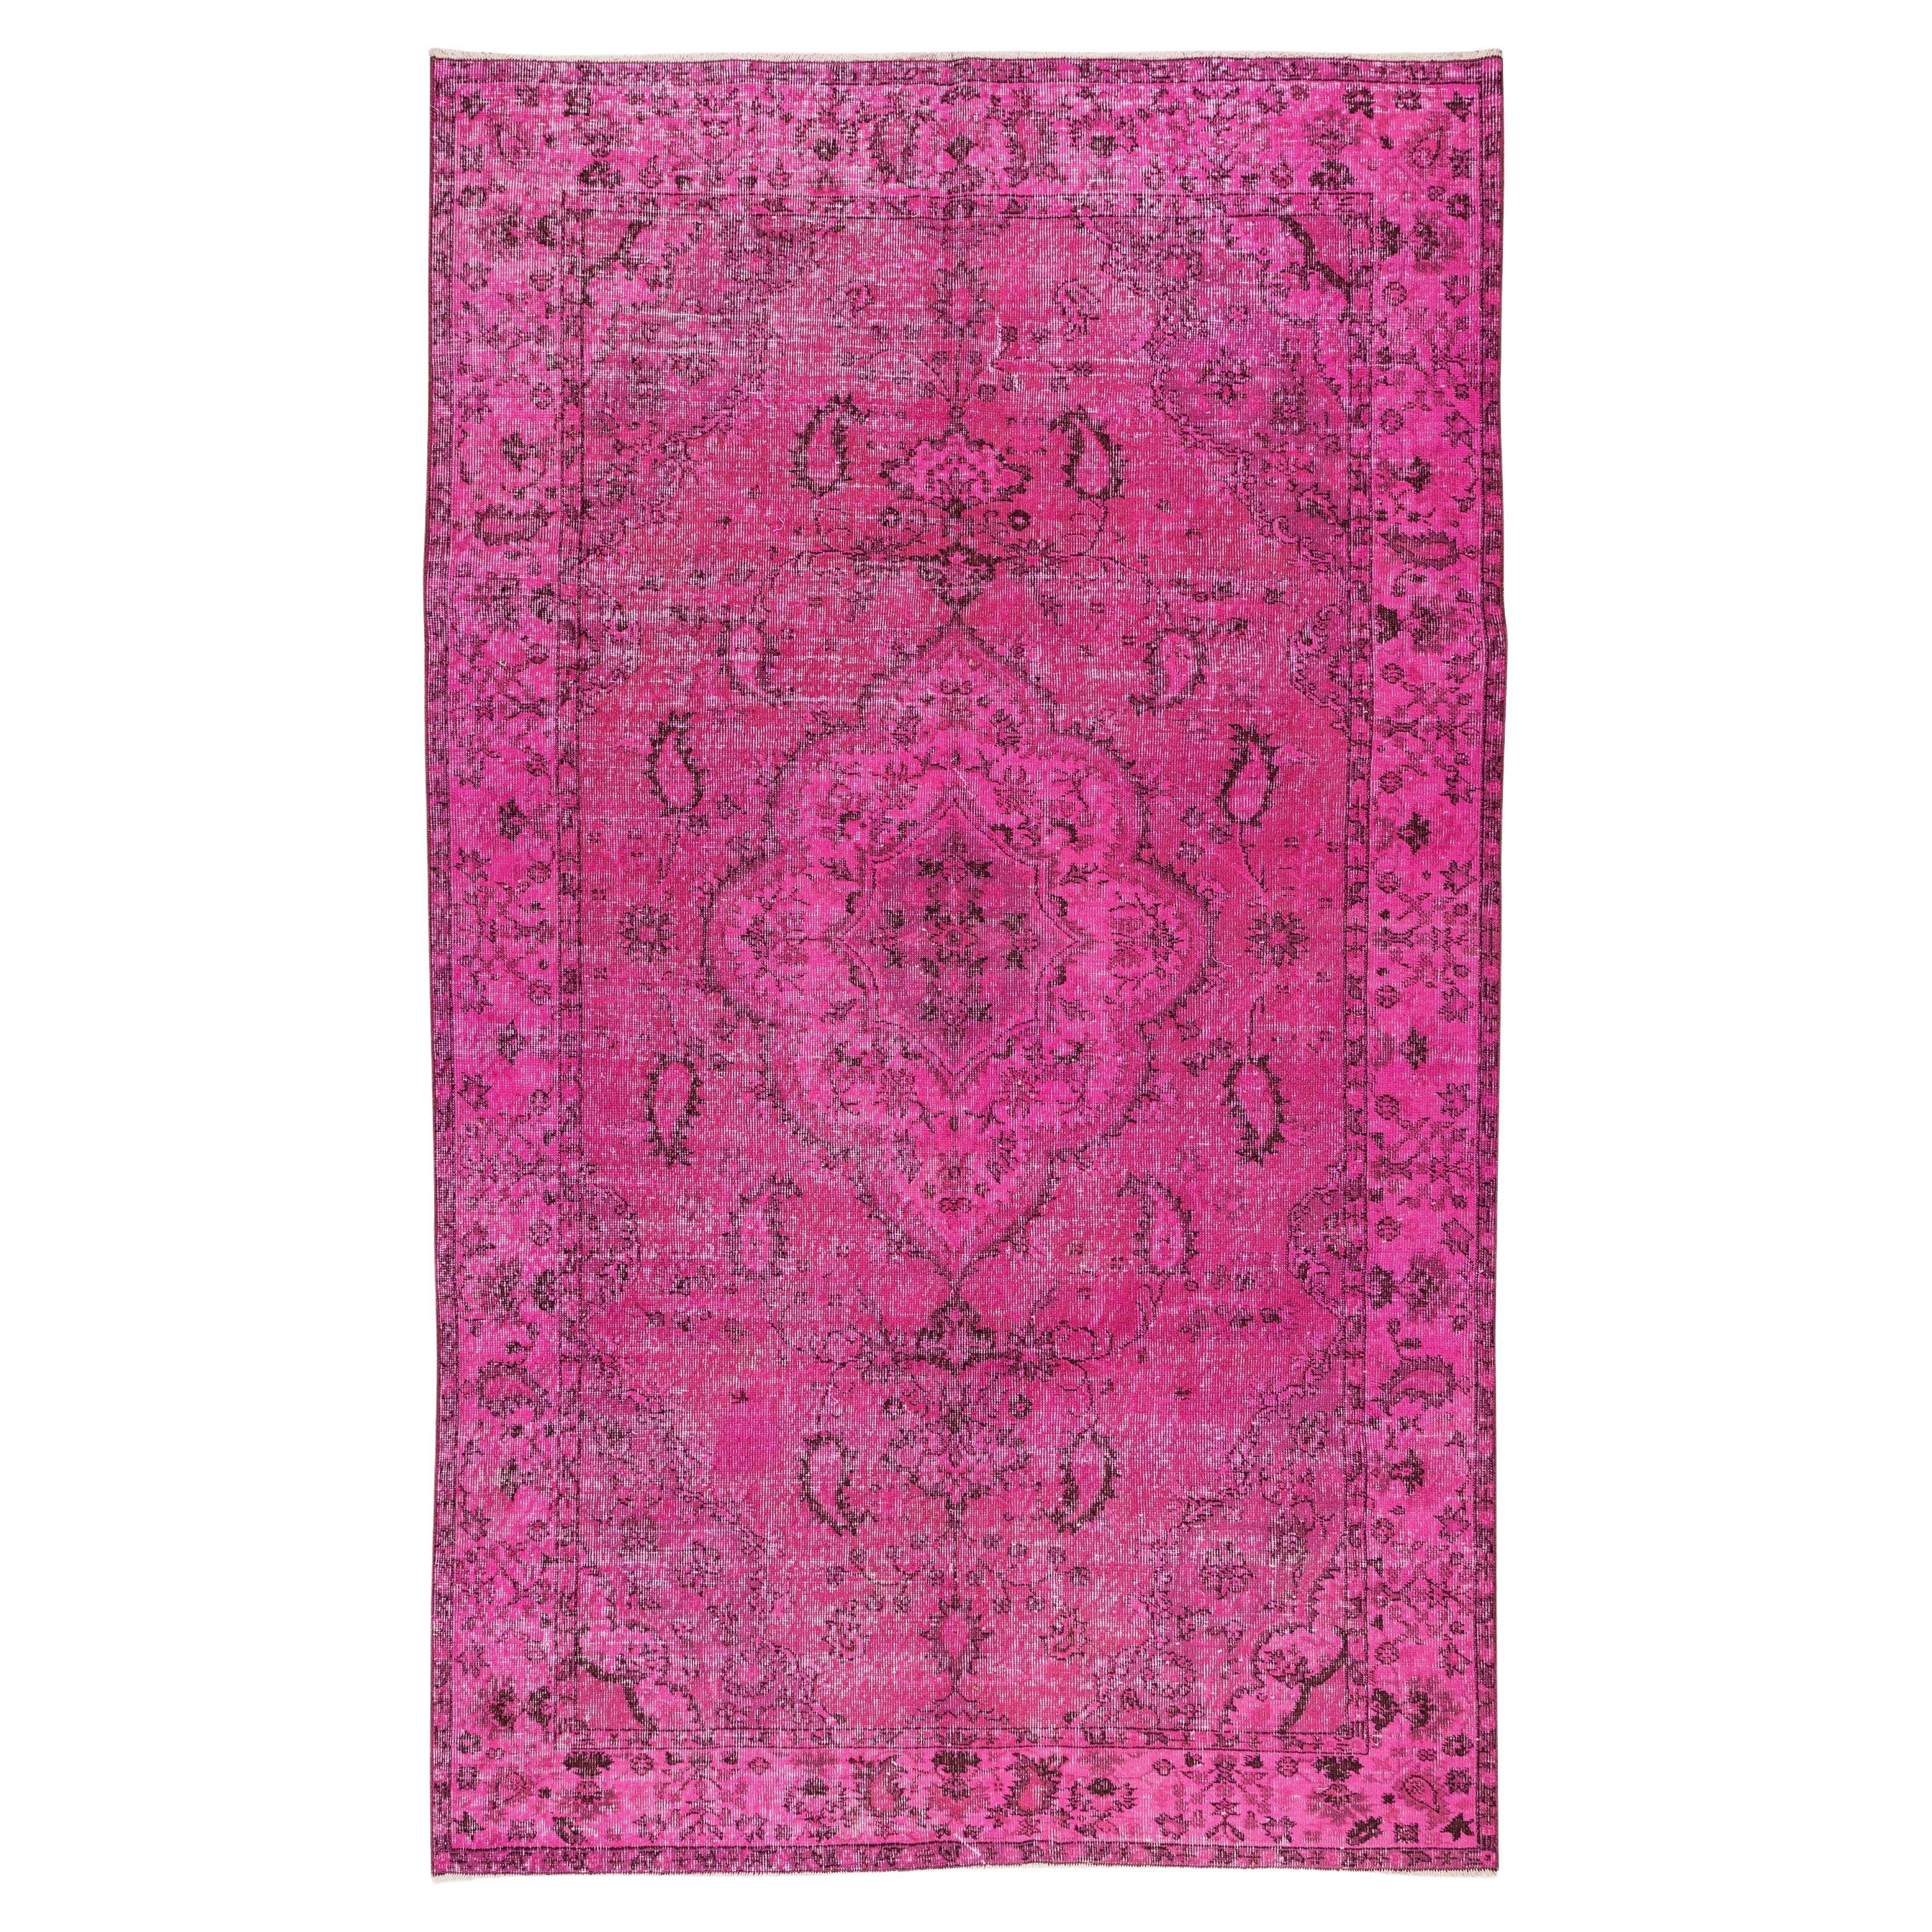 Pink Handmade Turkish Carpet, Modern Rug for Dining Room or Living Room